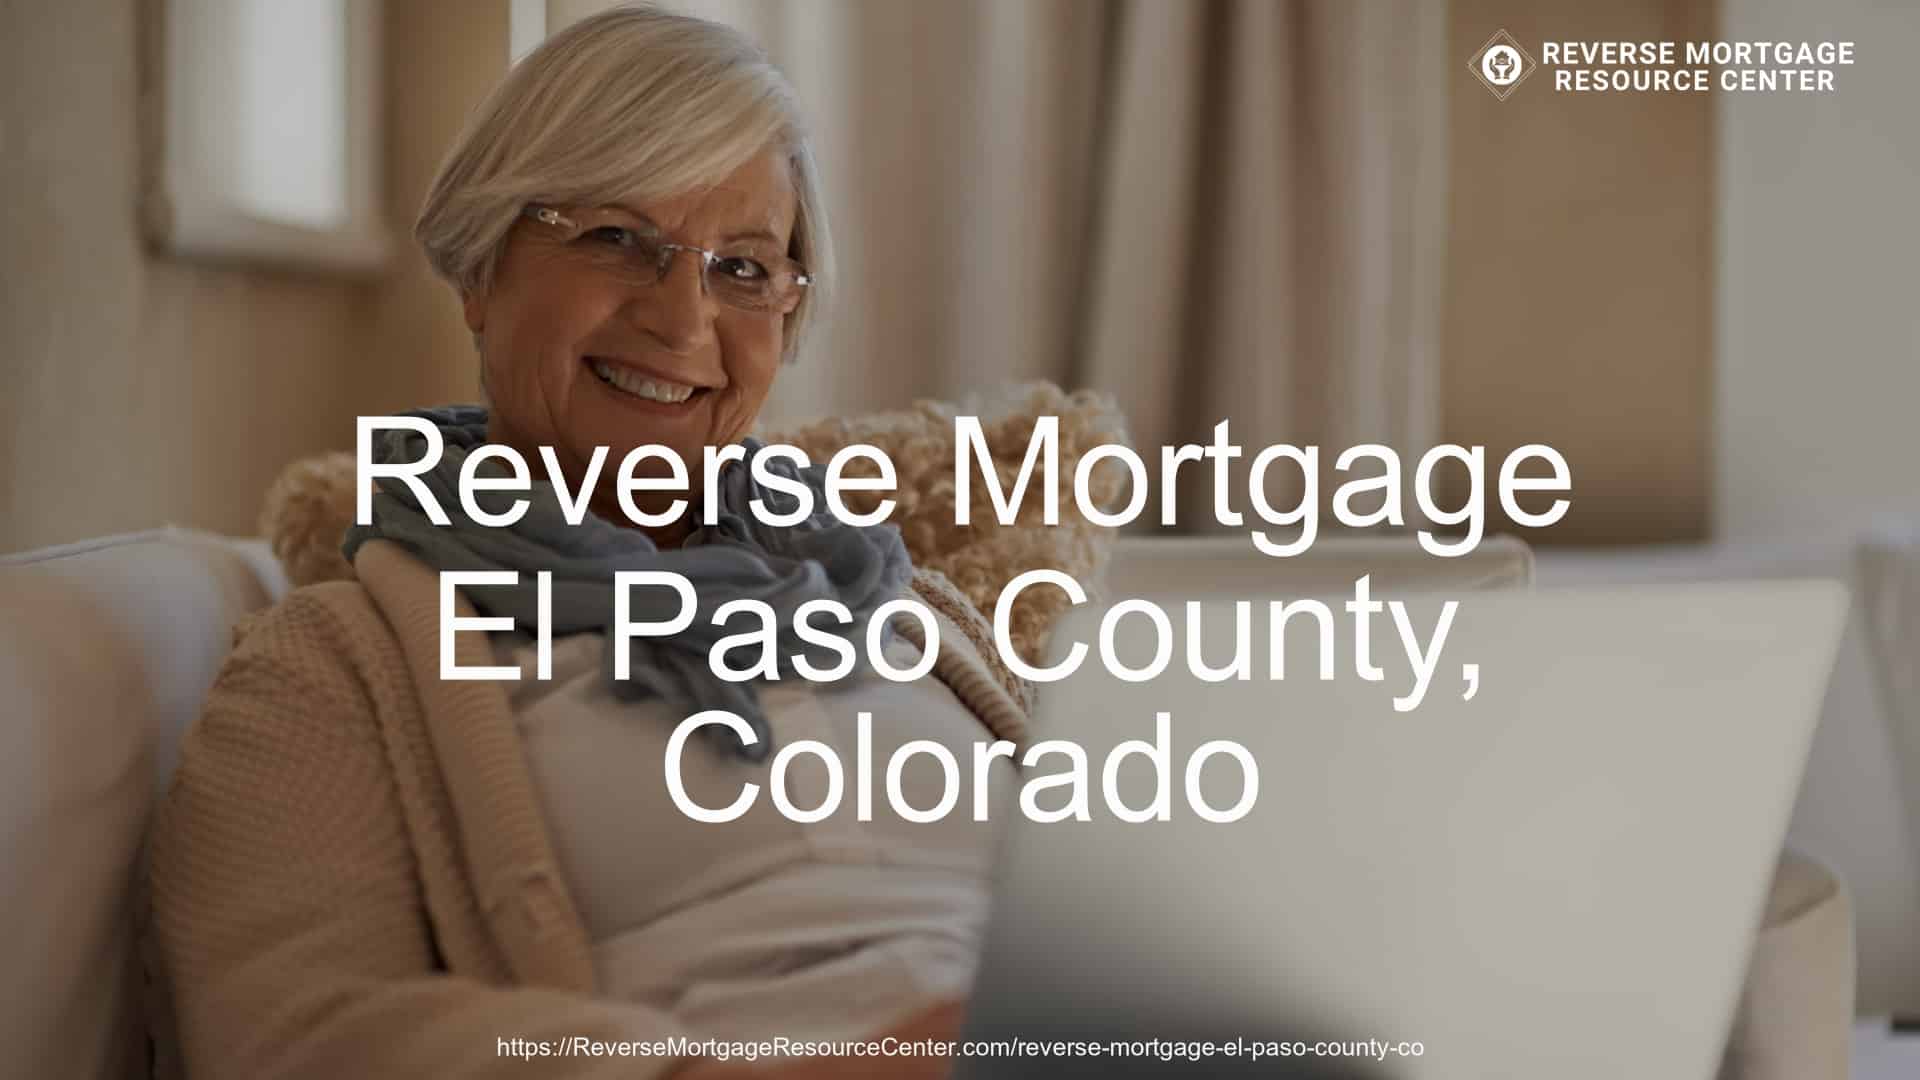 Reverse Mortgage Loans in El Paso County Colorado